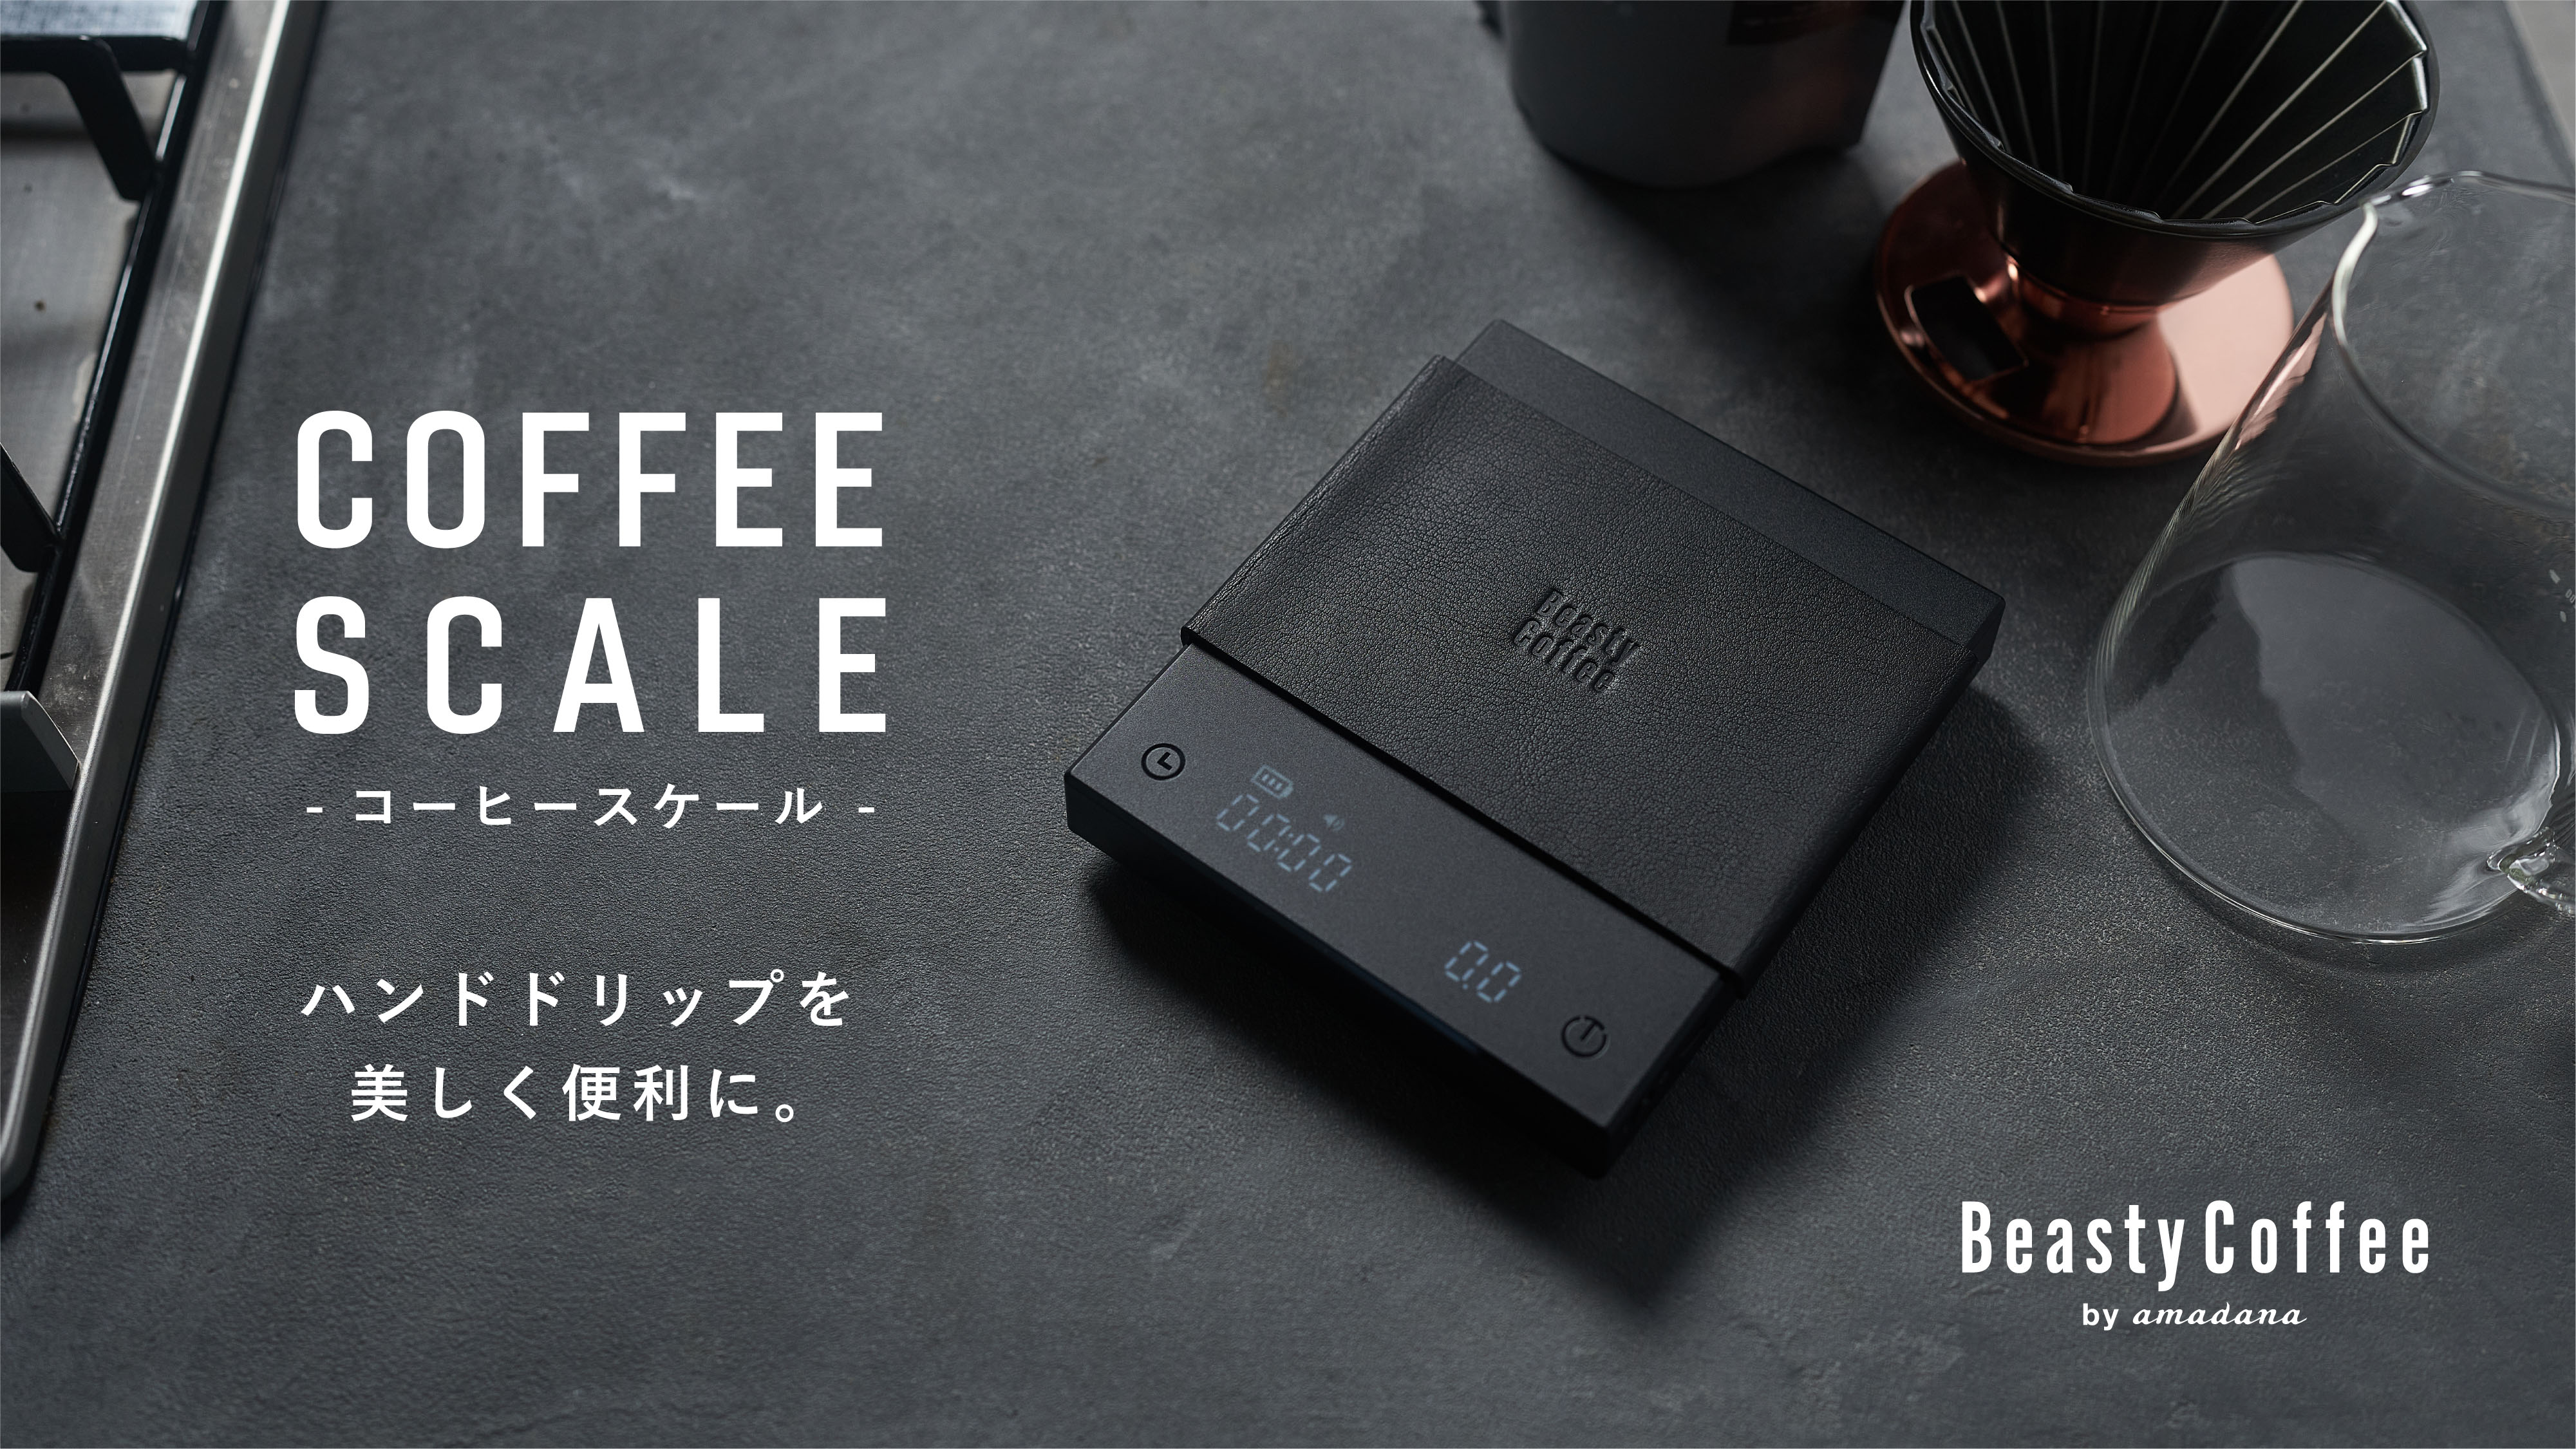 Beasty Coffee by amadana が新製品コーヒースケールとIHプレートの ...